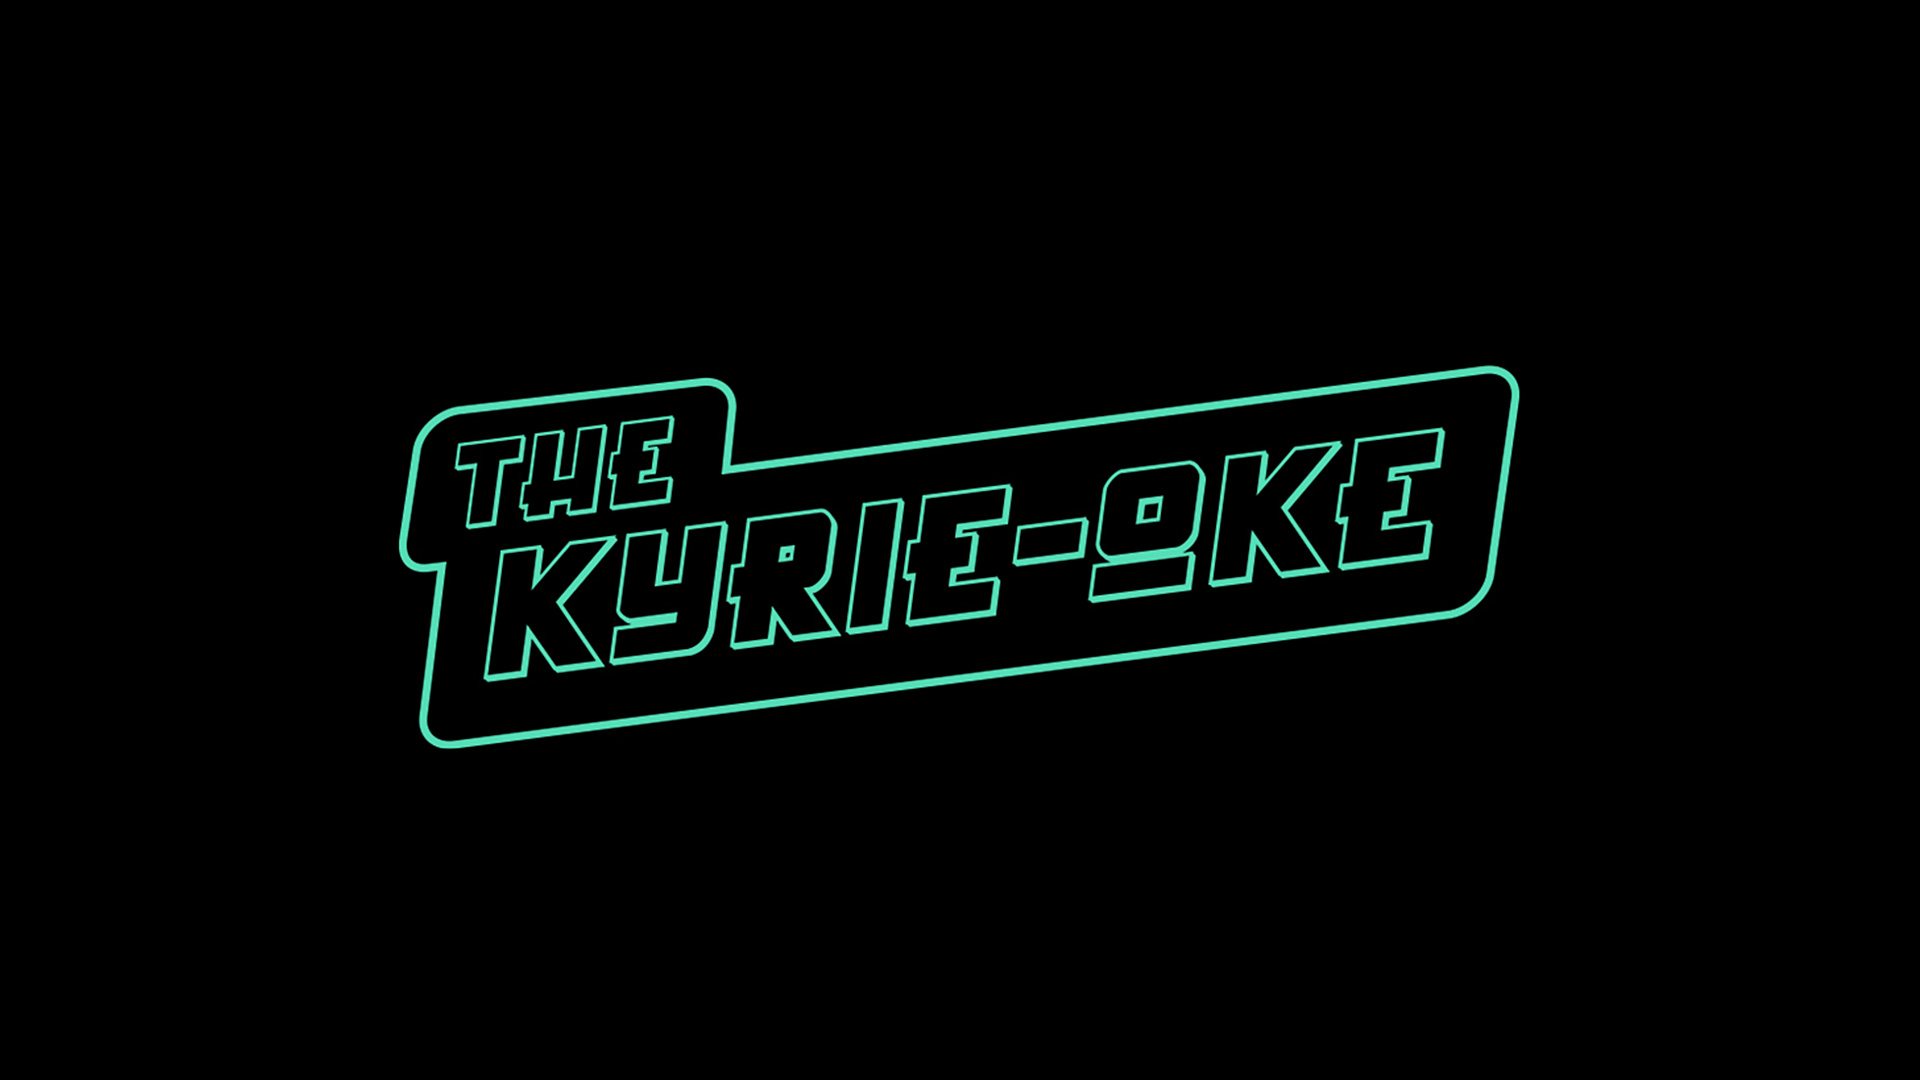 Kyrioke_TN